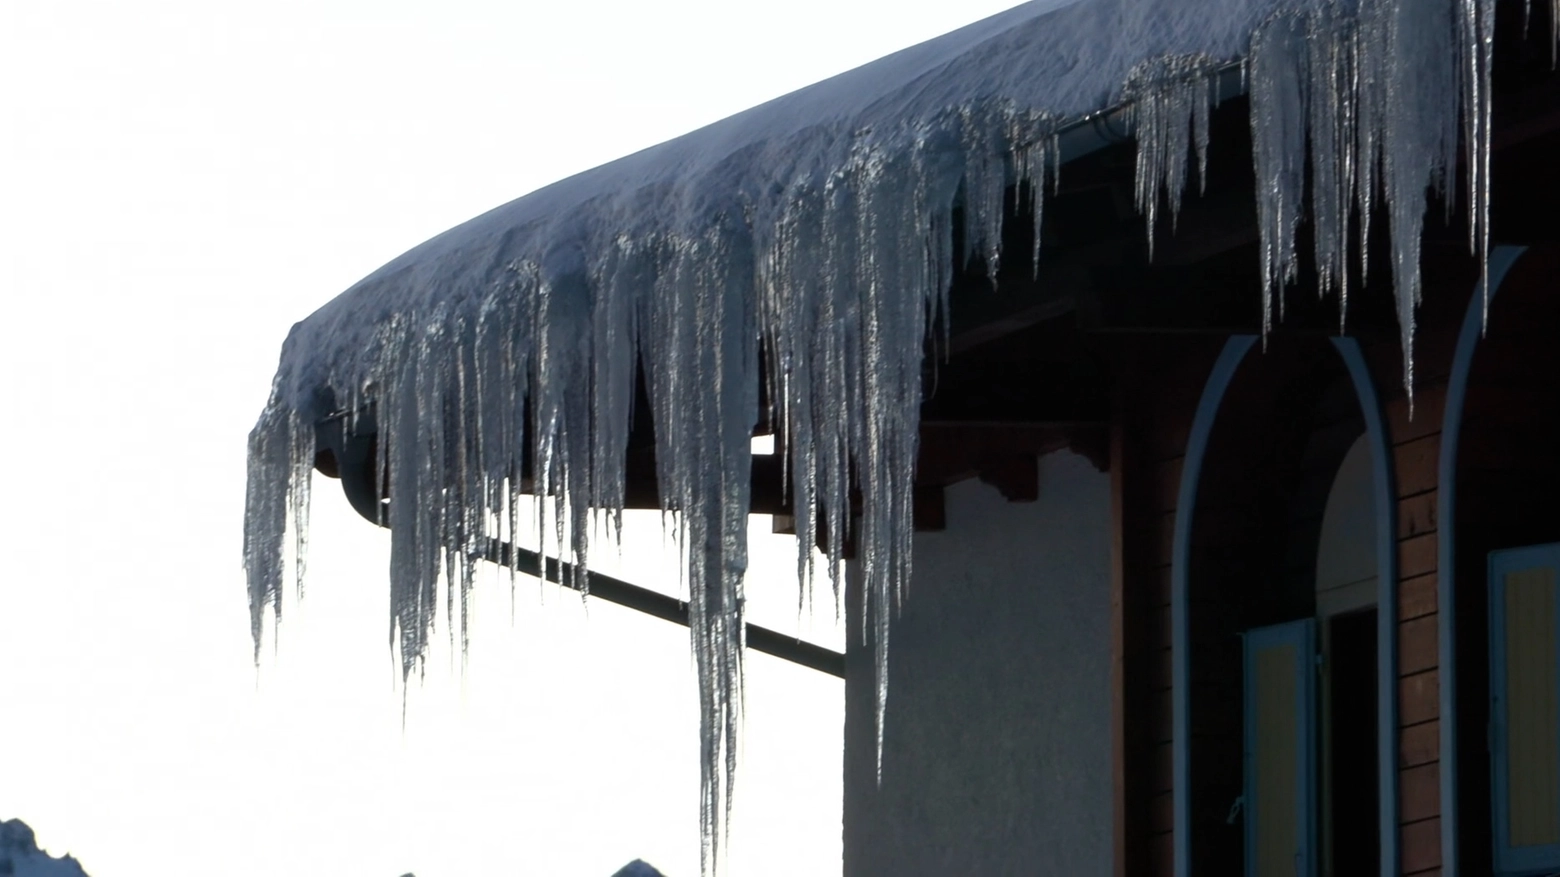 Risveglio da brividi in questo sabato 20 gennaio, automobilisti in panne e ghiaccio a forma di stalattiti. E nei prossimi giorni ancora neve e temperature sotto zero